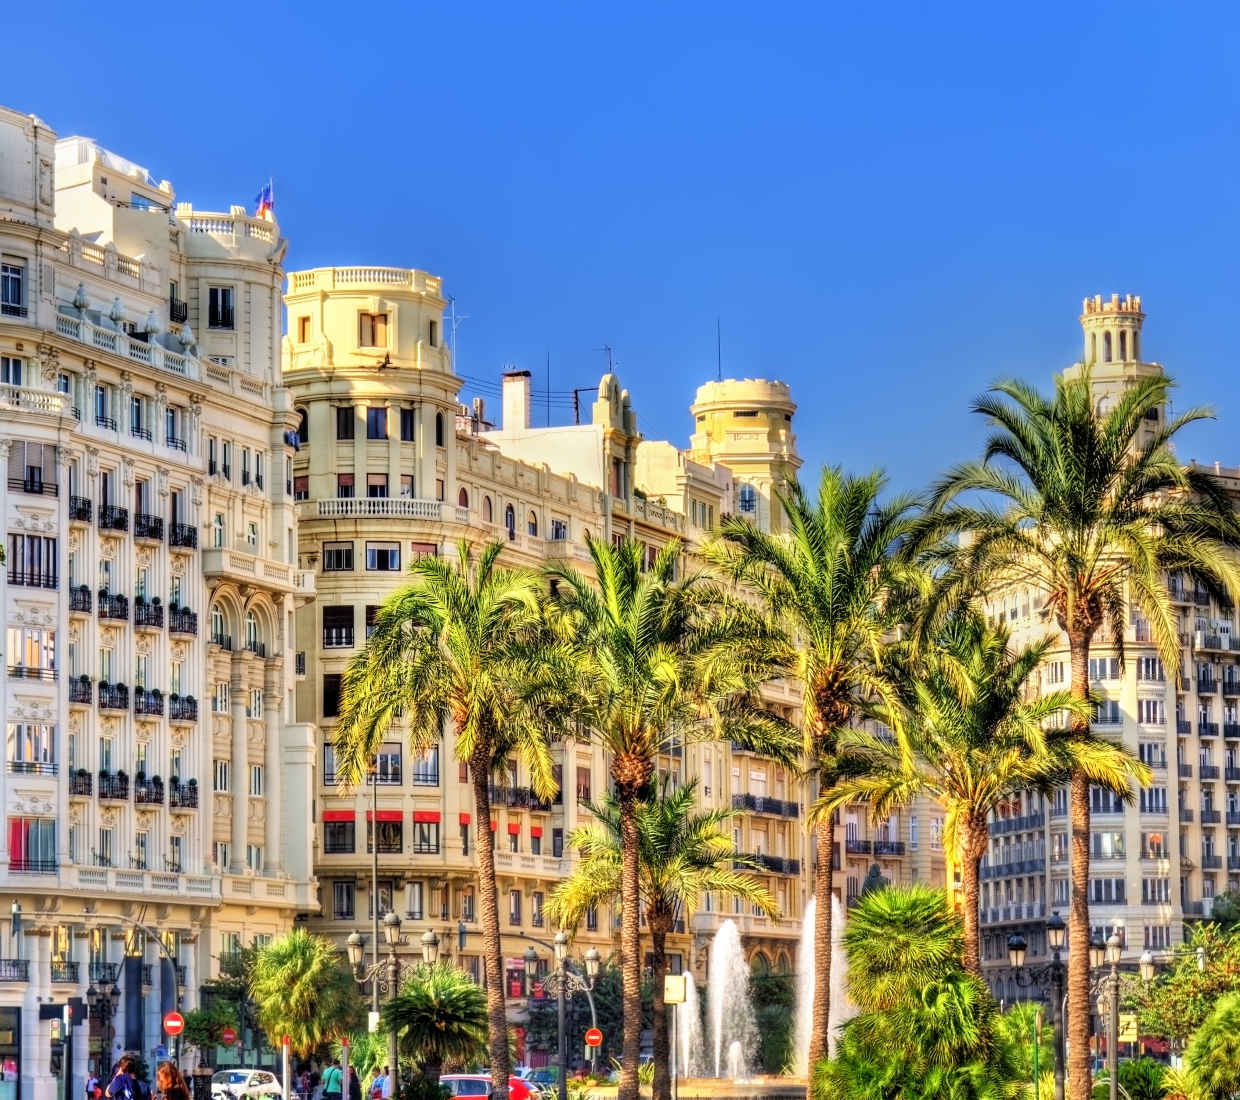 Hoteles con encanto en la Provincia de Barcelona, hoteles de lujo y casas rurales